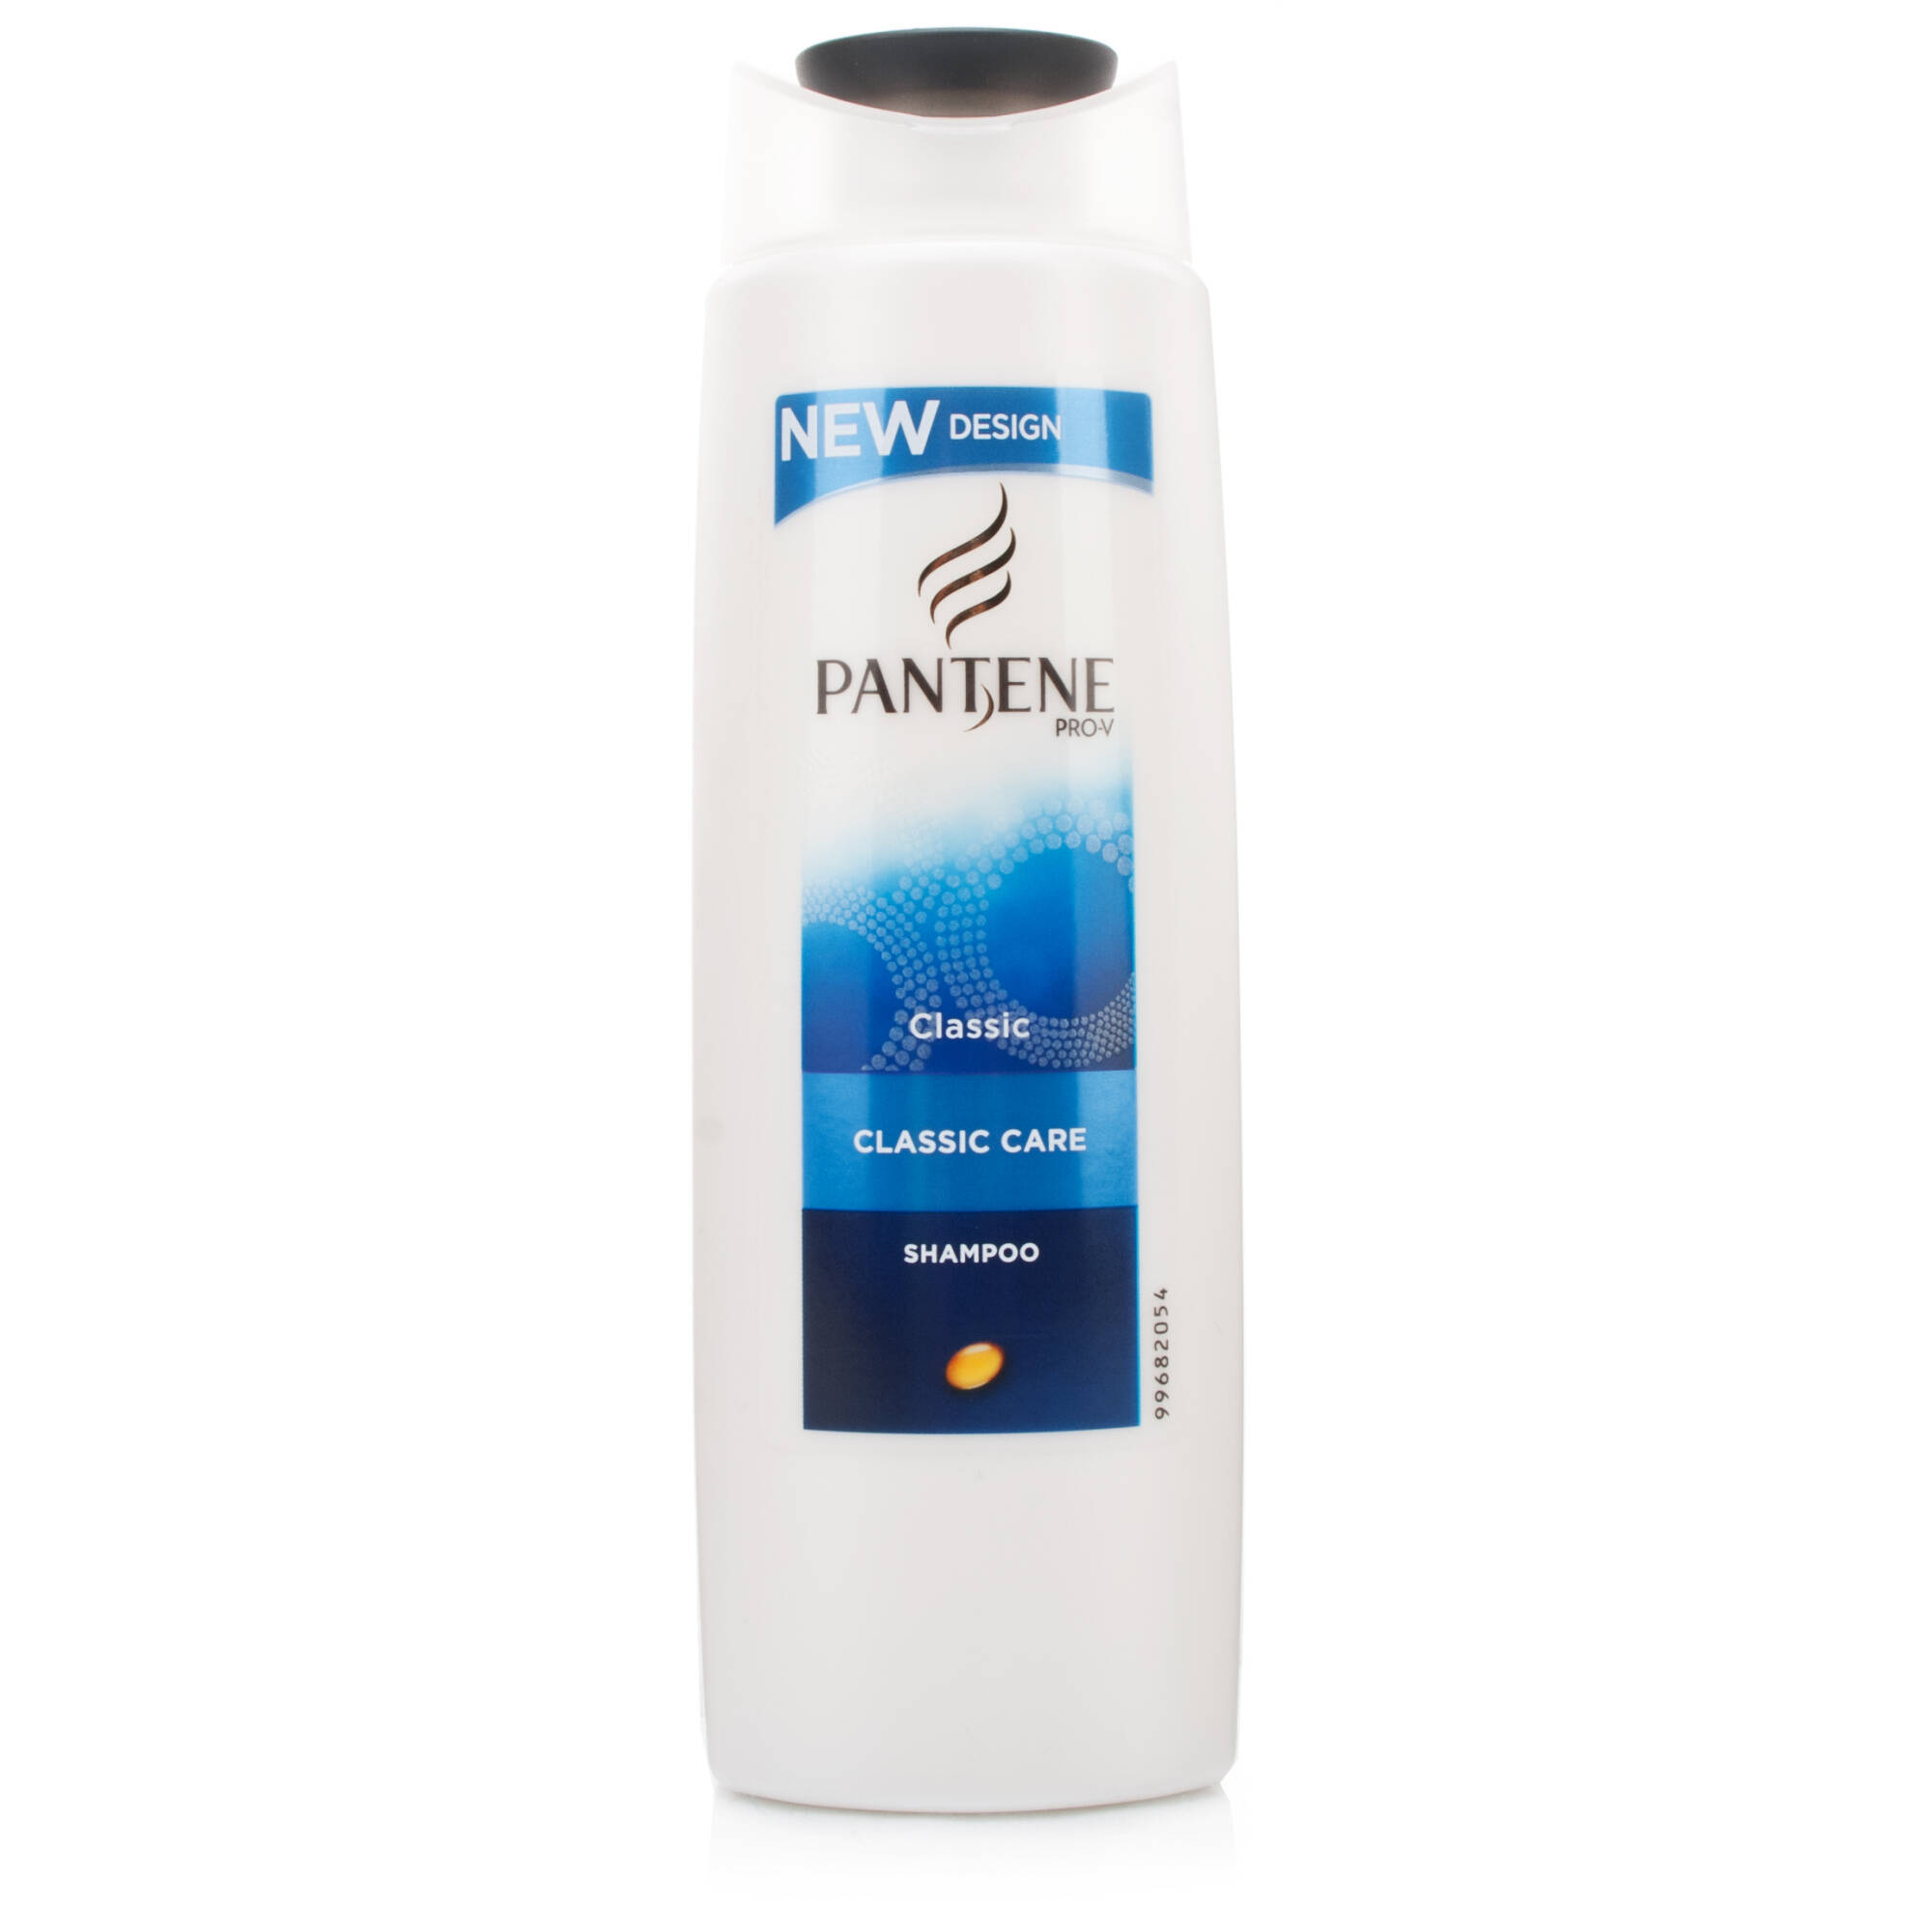 Pantene-Pro-V-Classic-Care-Shampoo-18209